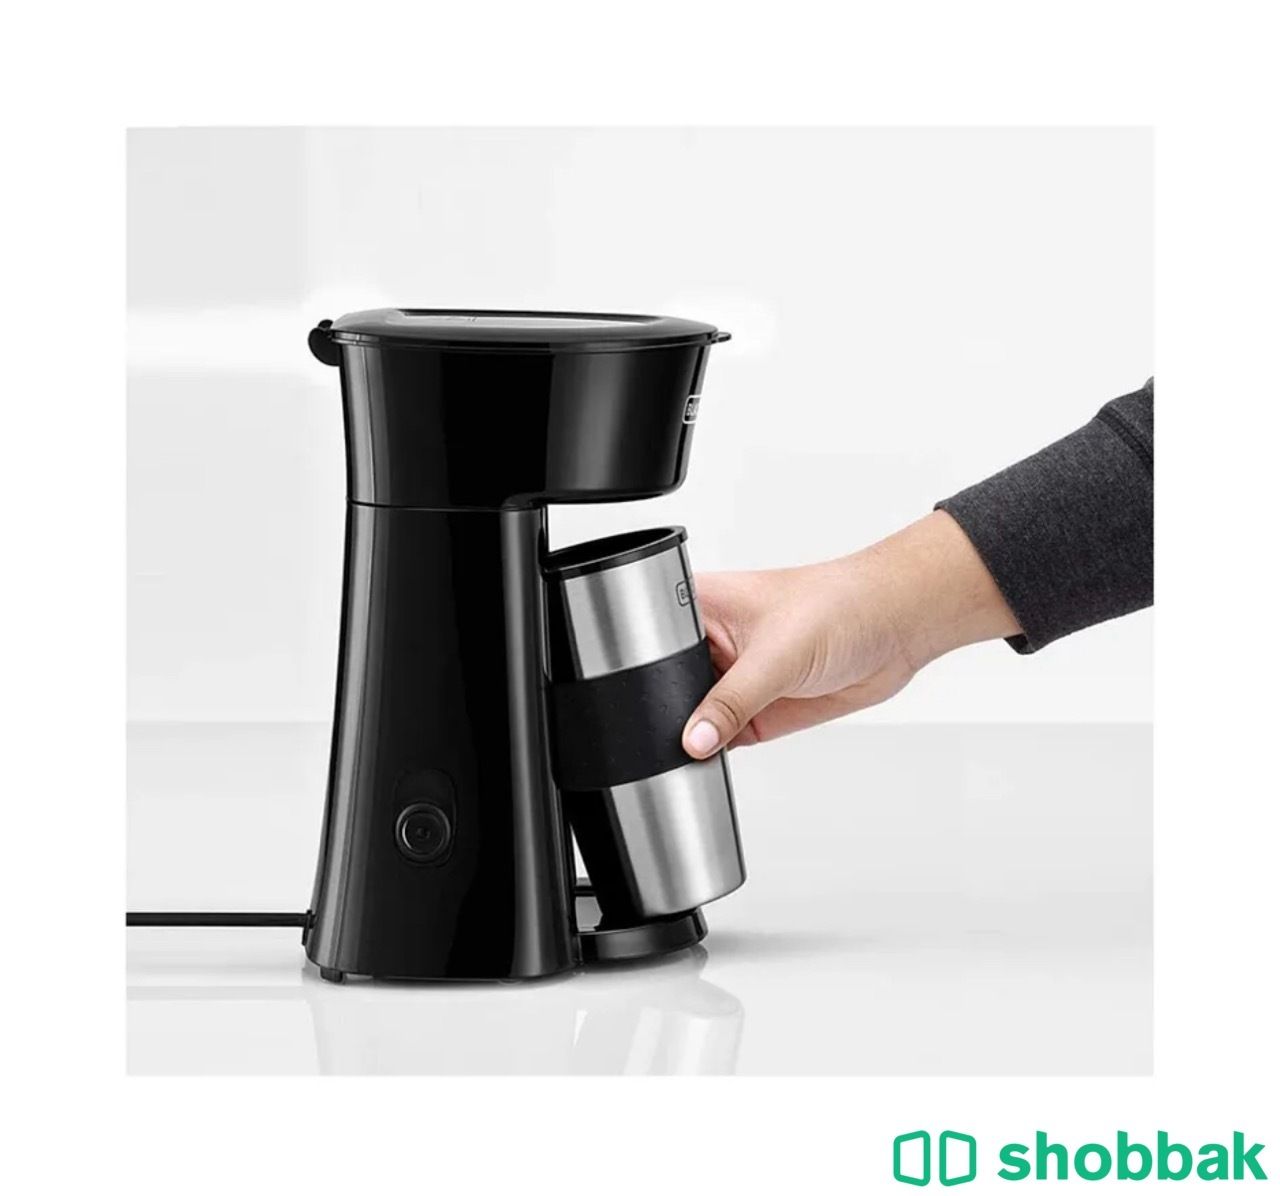 آلة قهوة سوداء صغيرة من بلاك اند ديكر Shobbak Saudi Arabia